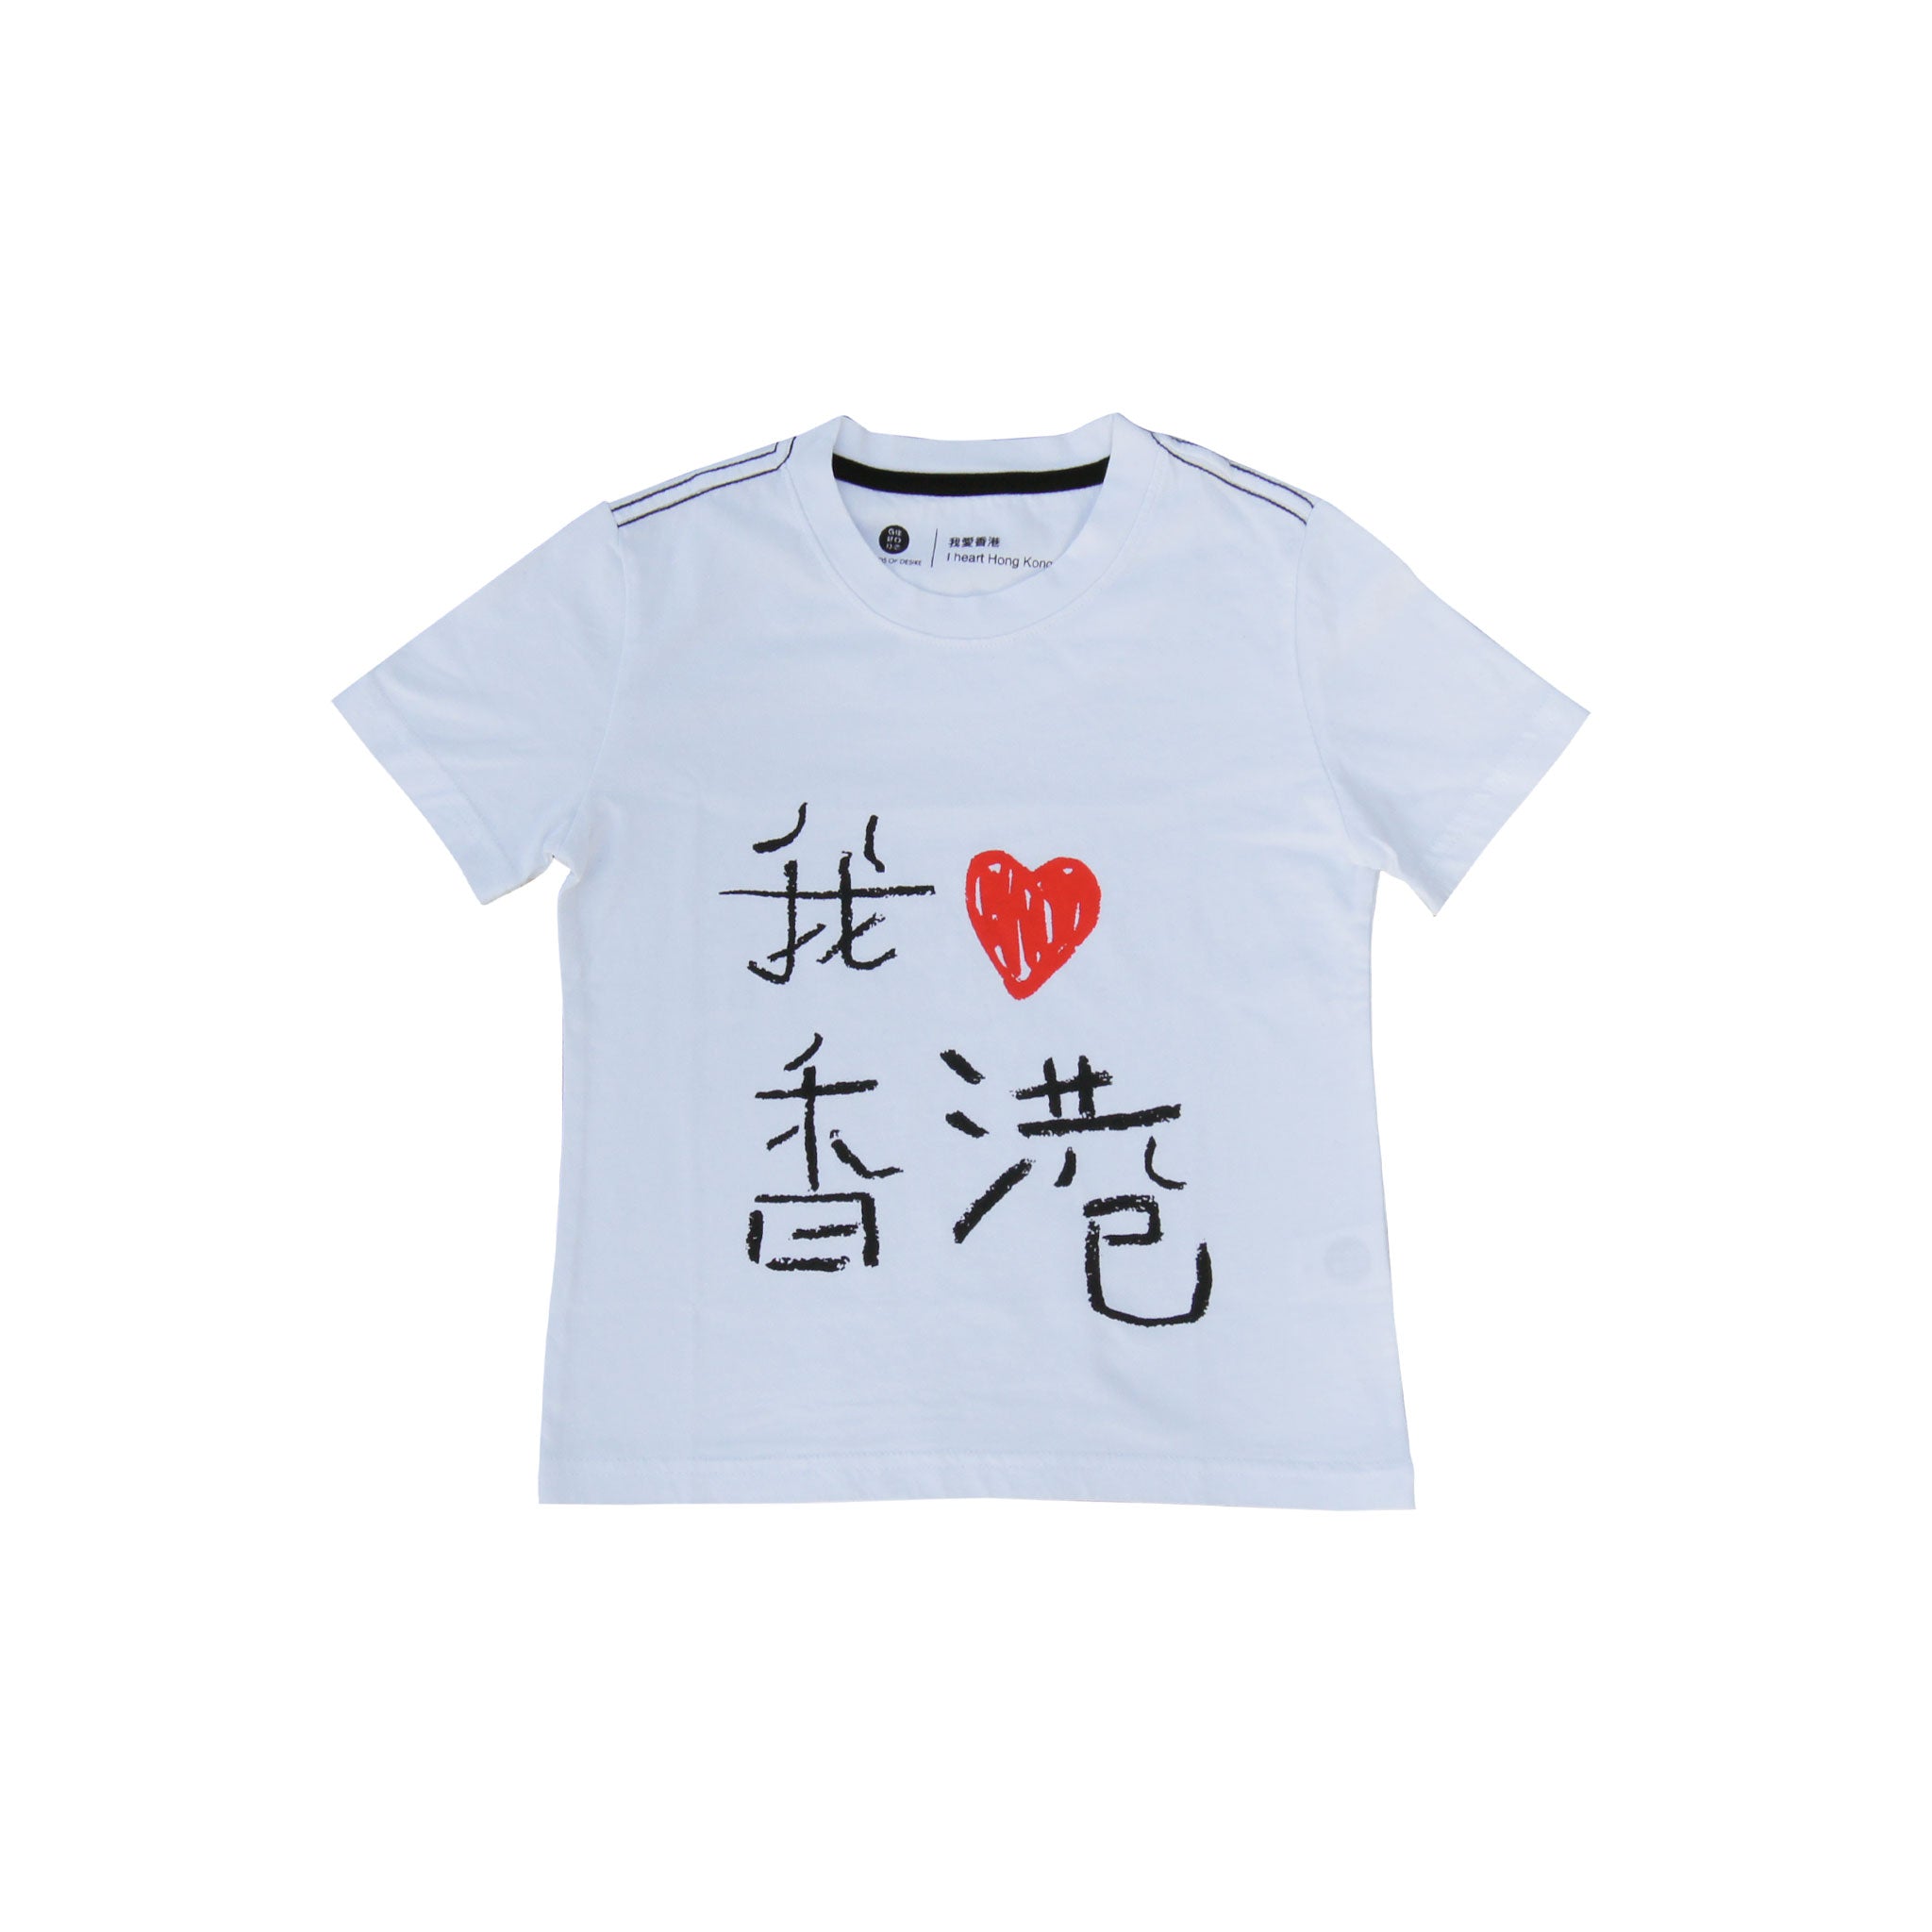 'I Love HK' kids t-shirt (white)